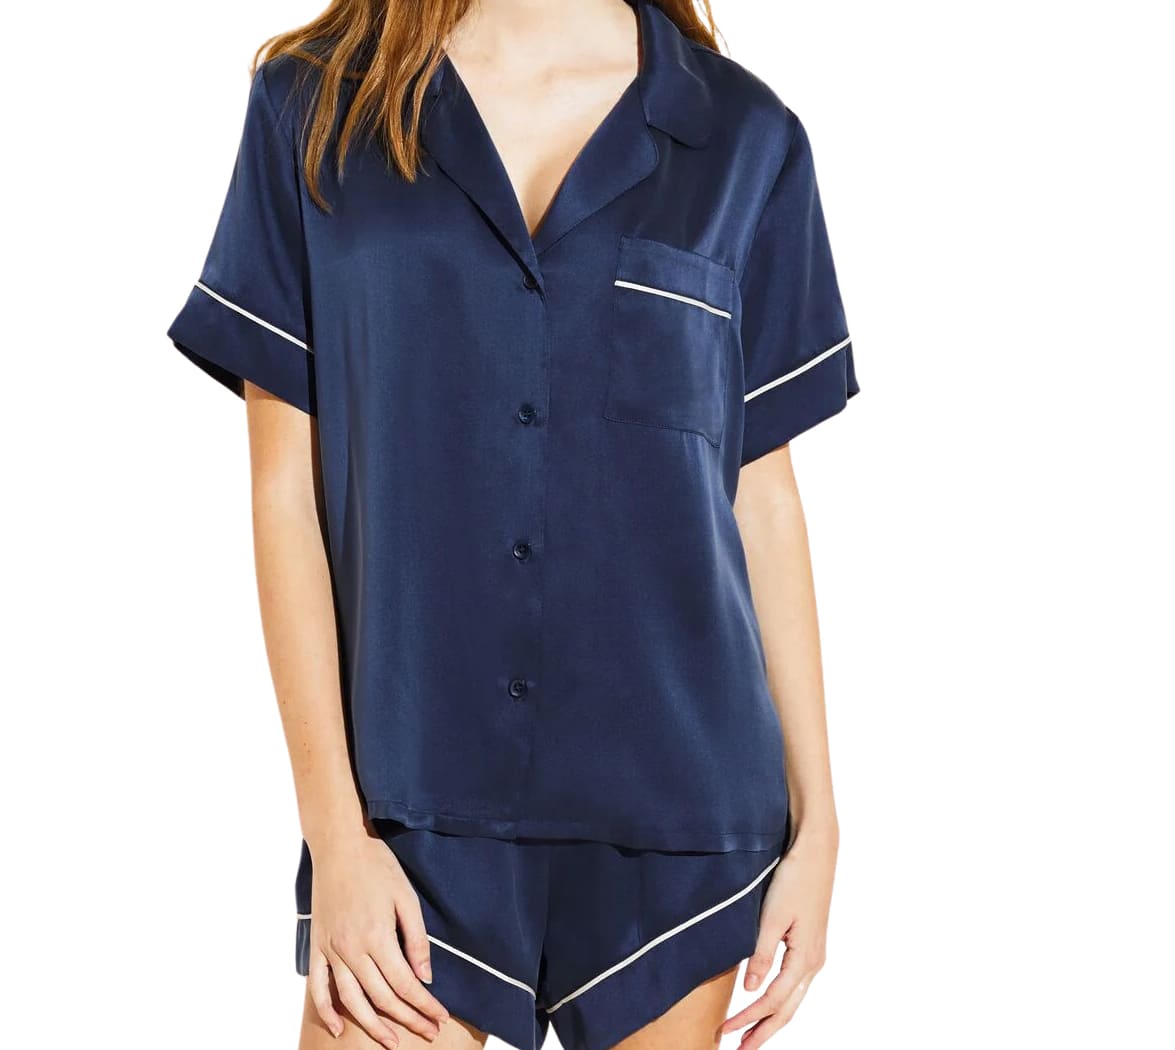 Long Sleeve Silk Top Pajamas Set With Bra — My Comfy Pajama